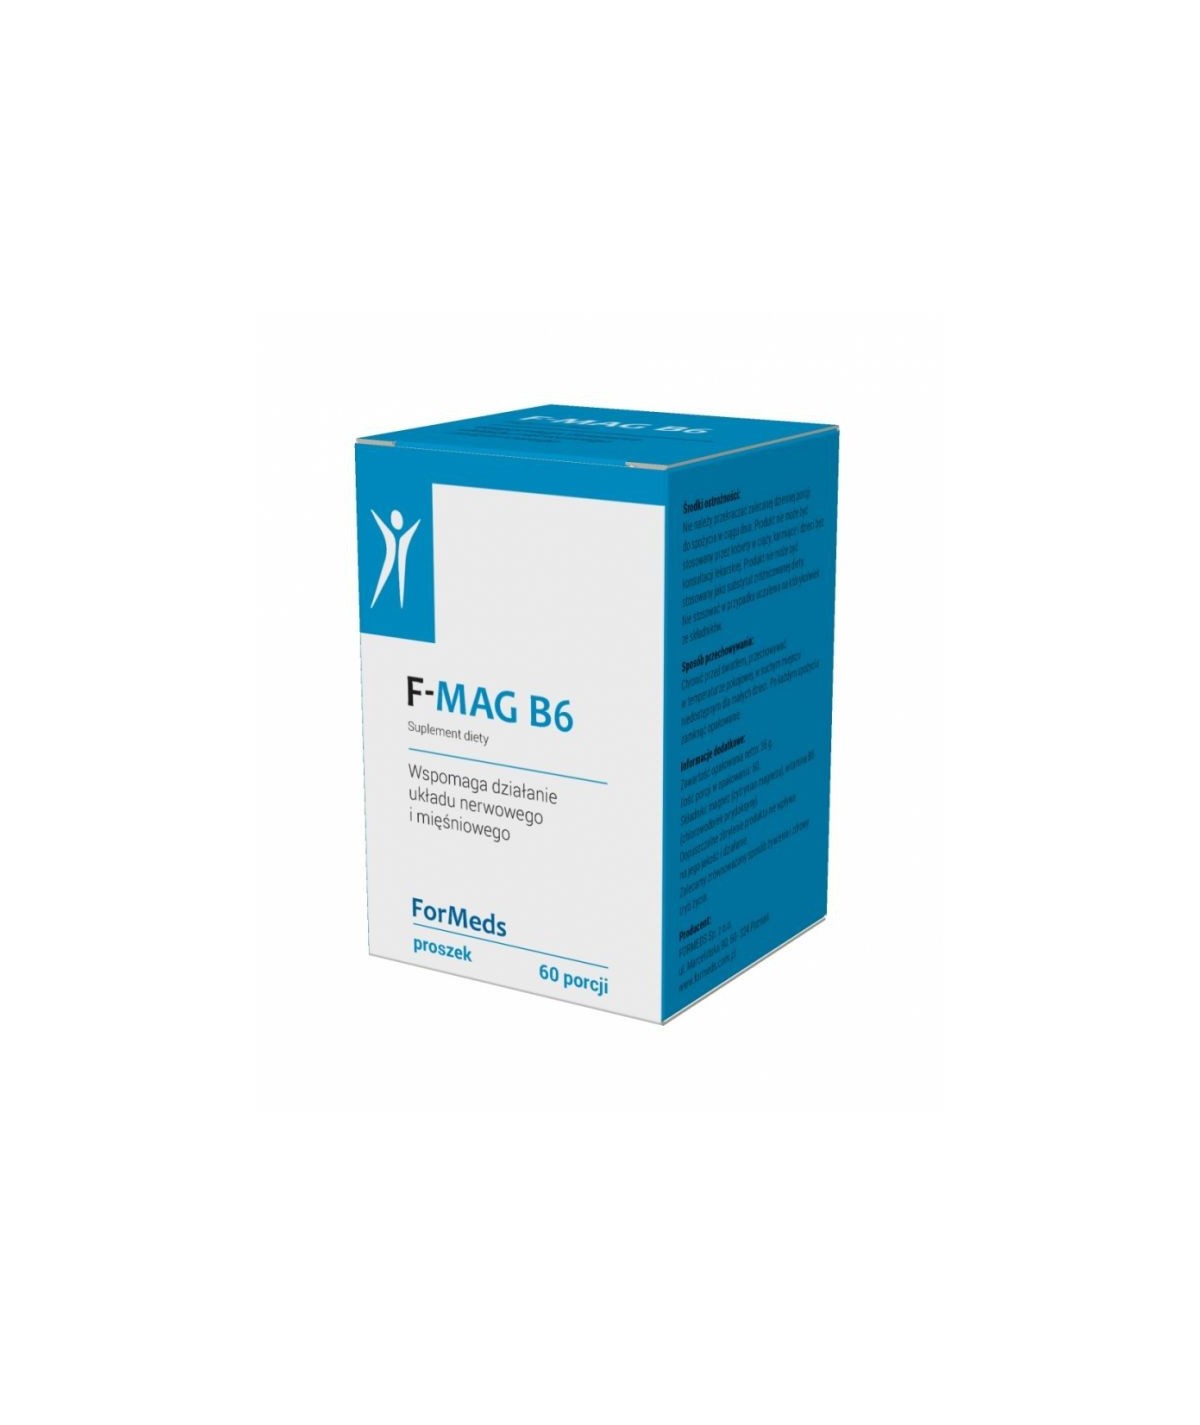 F - MAG B6 wspomaga działanie układu nerwowego i mięśniowego - 60 porcji